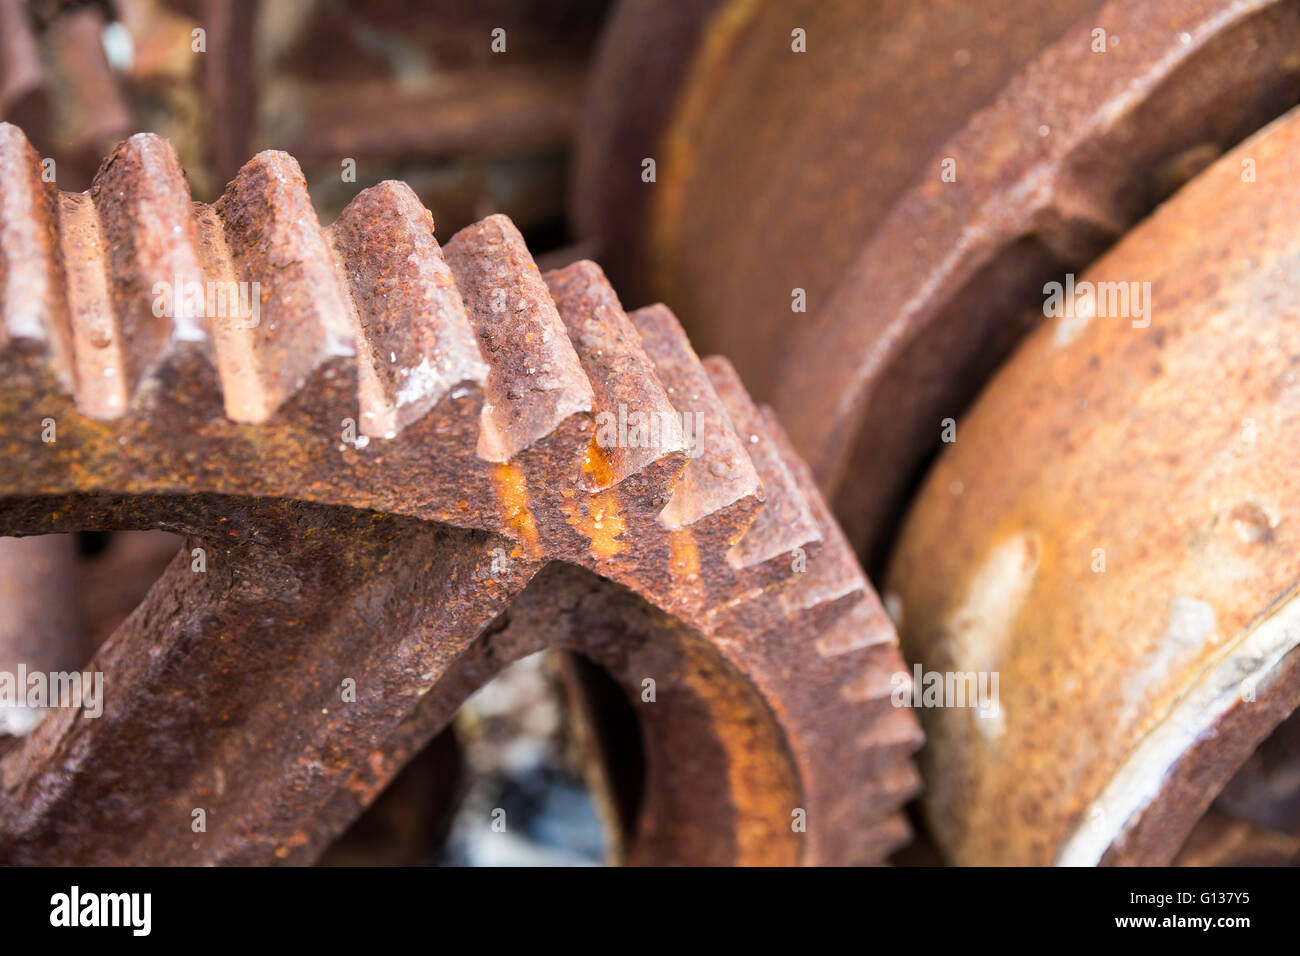 Viejos oxidados engranajes para la industria pesada como piezas de maquinaria closeup Foto de stock